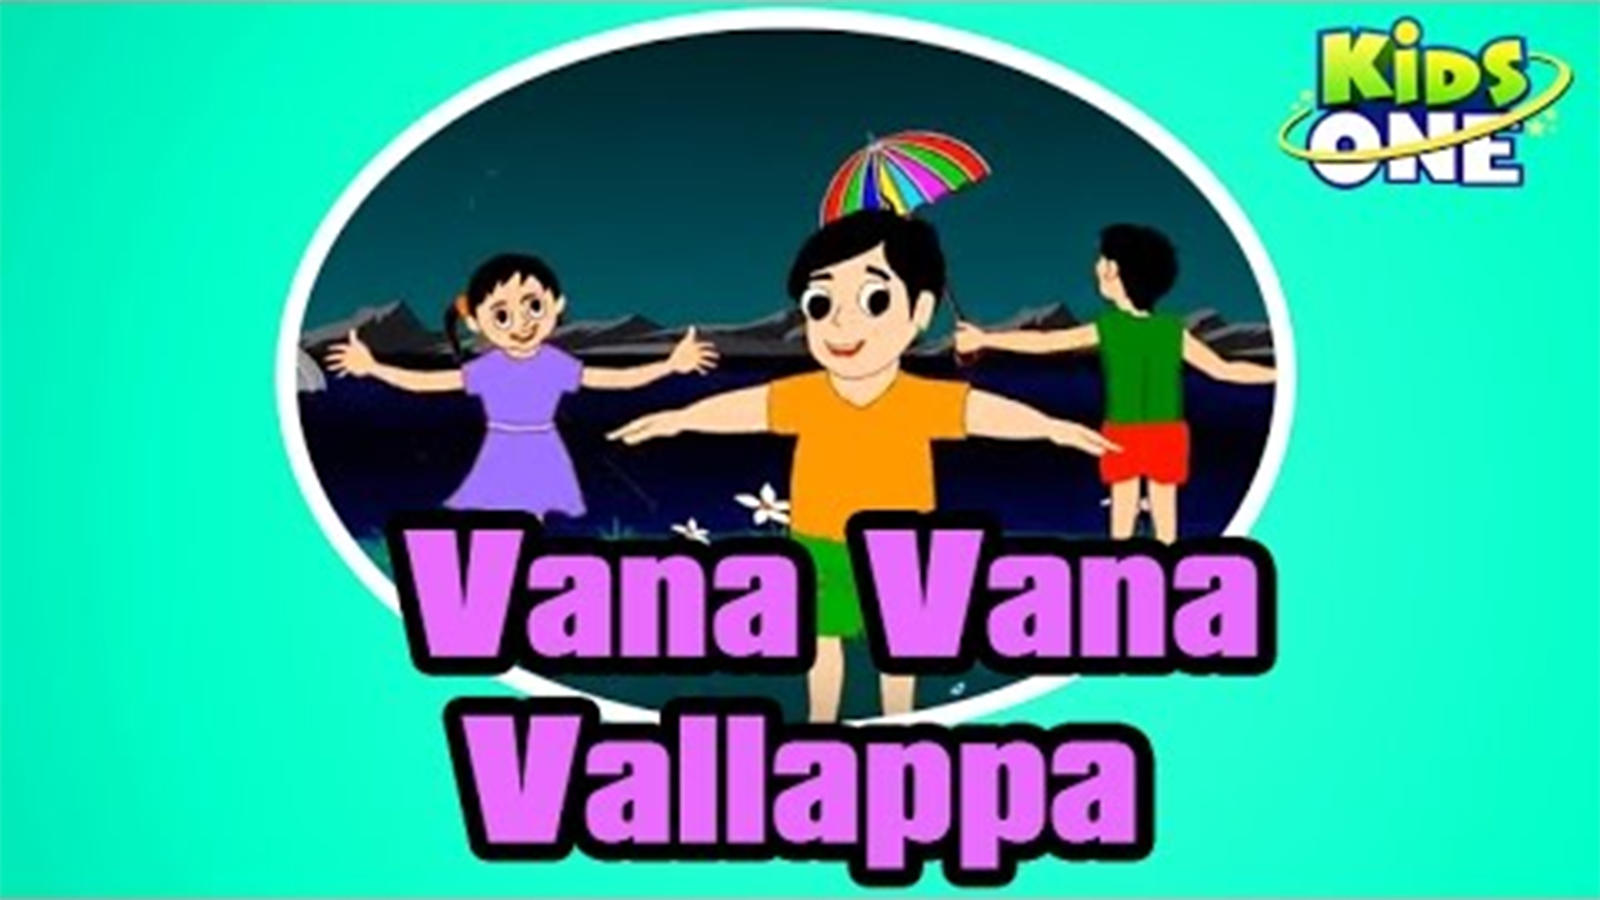 Telugu Nursery Rhymes Kids Video Song in Telugu 'Vana Vana Vallappa'